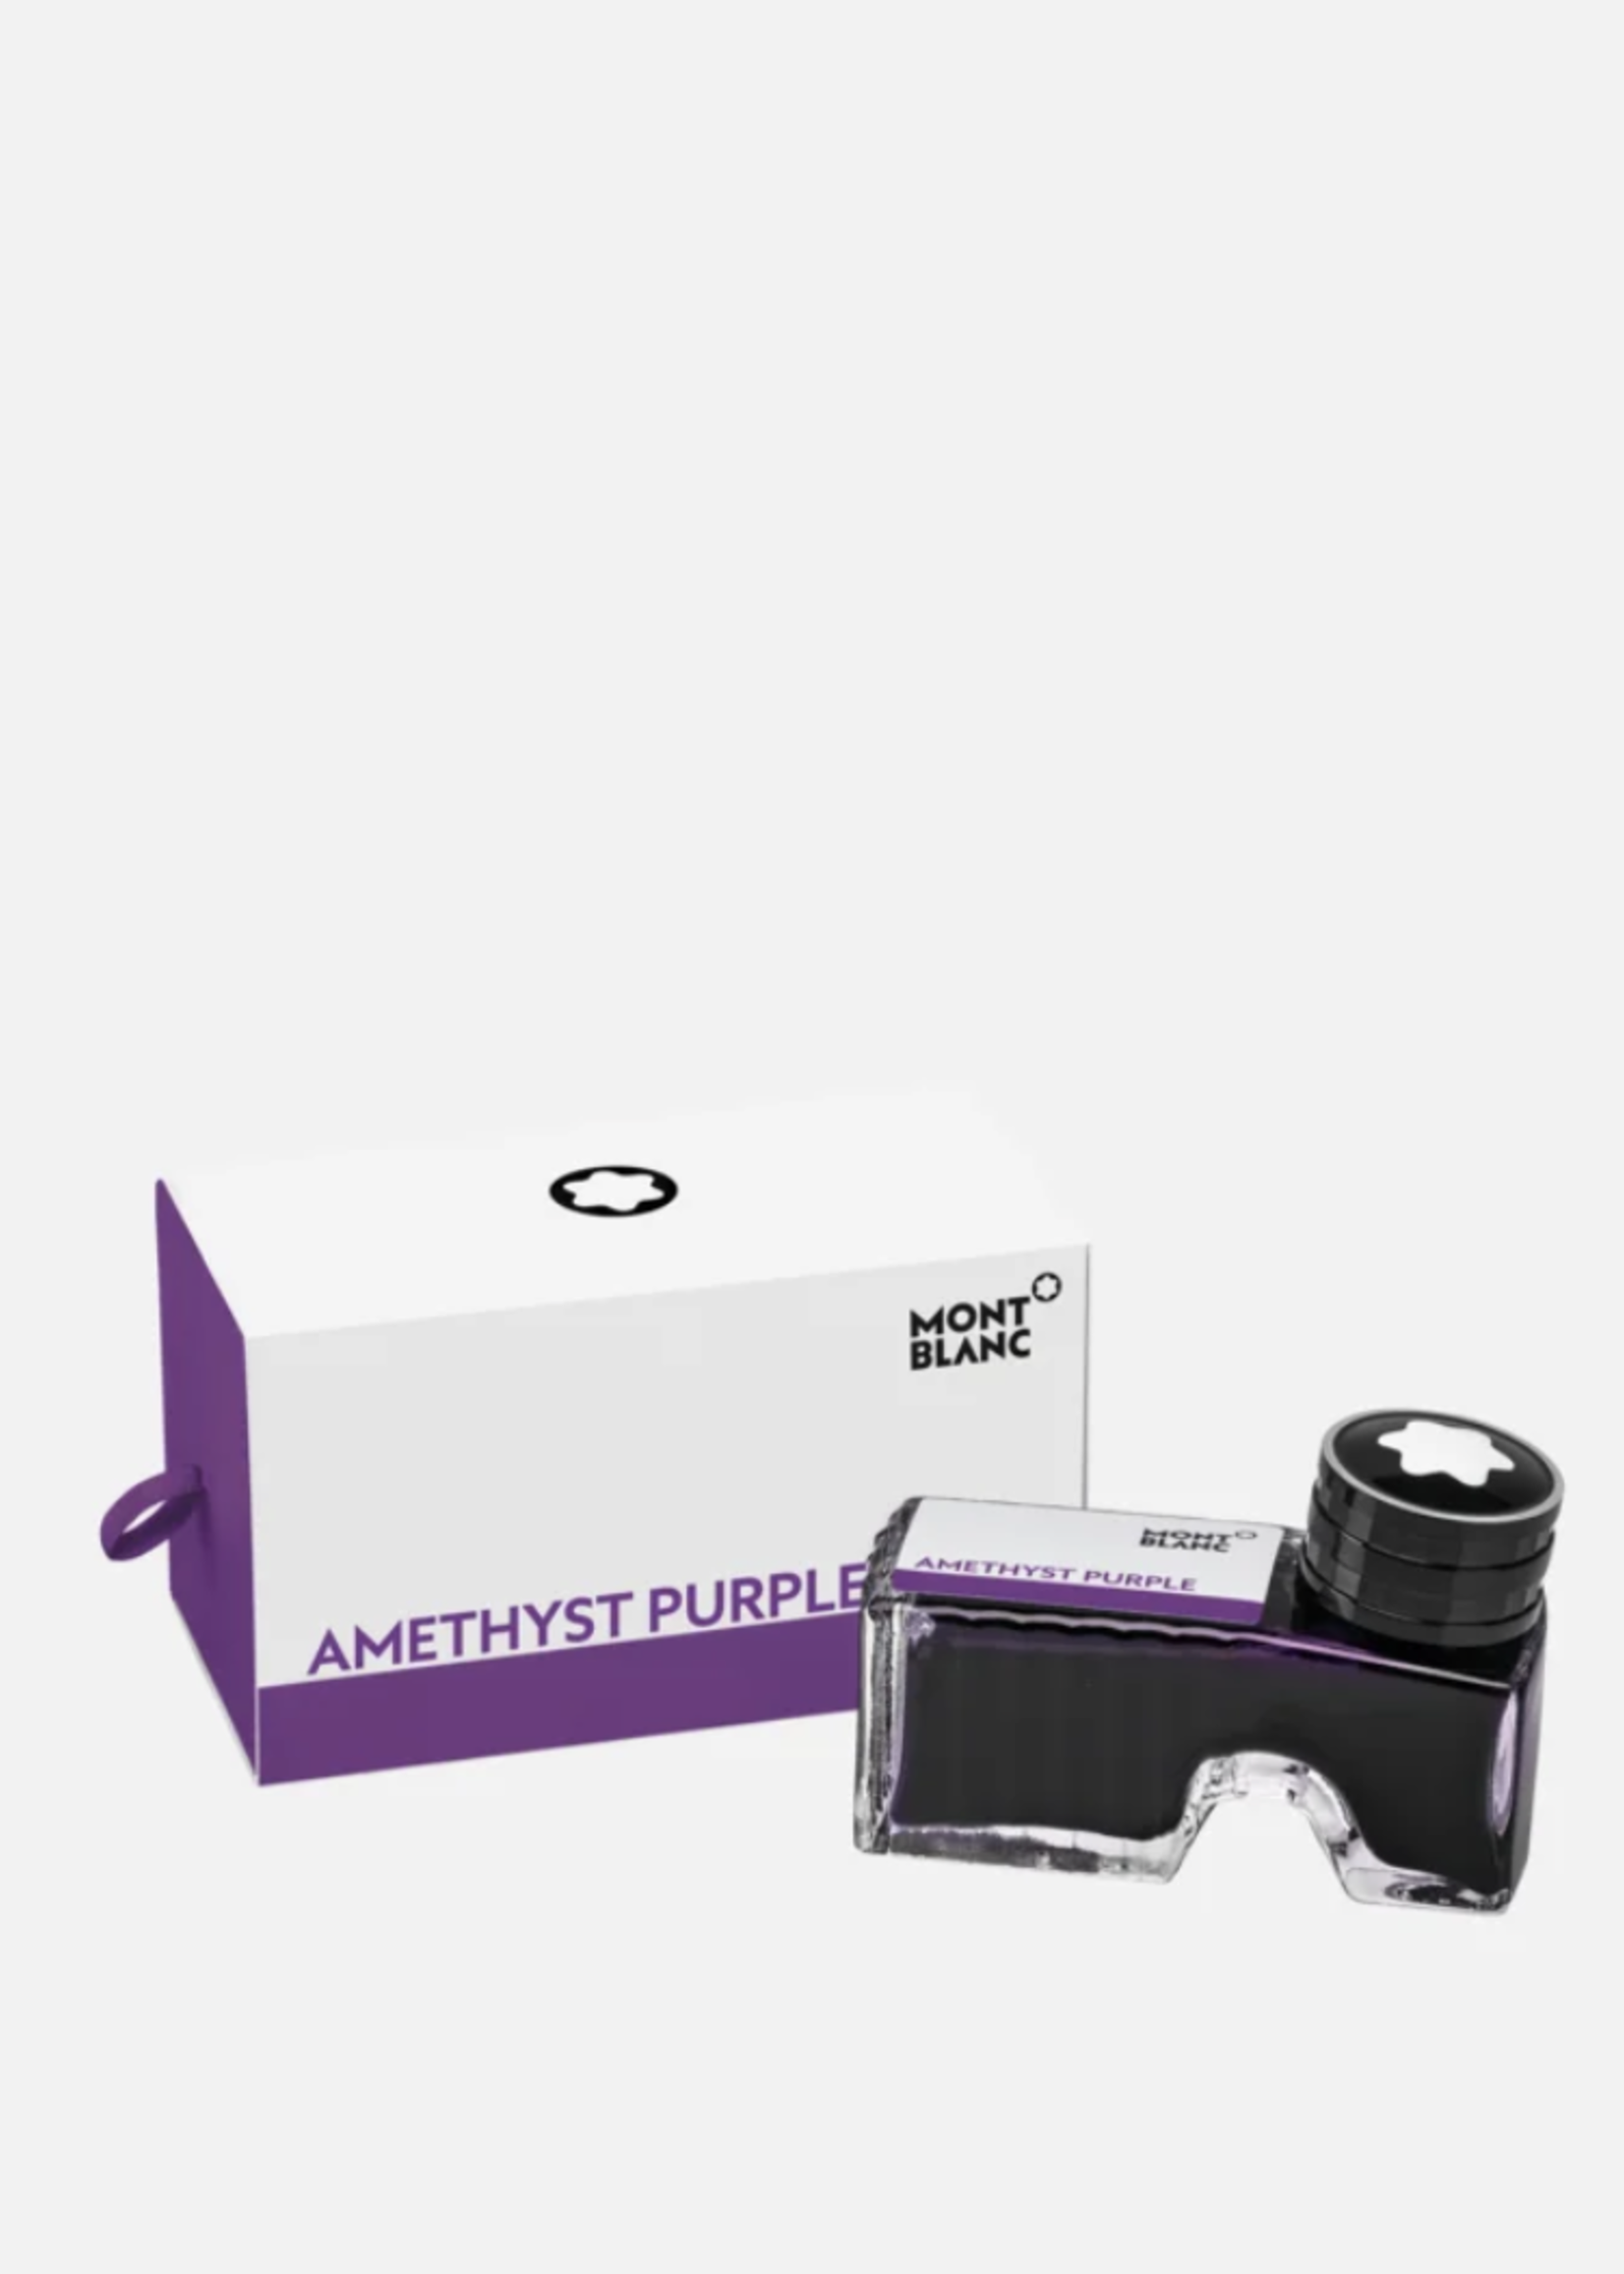 MONTBLANC Inkt 60ml Amethyst Purple